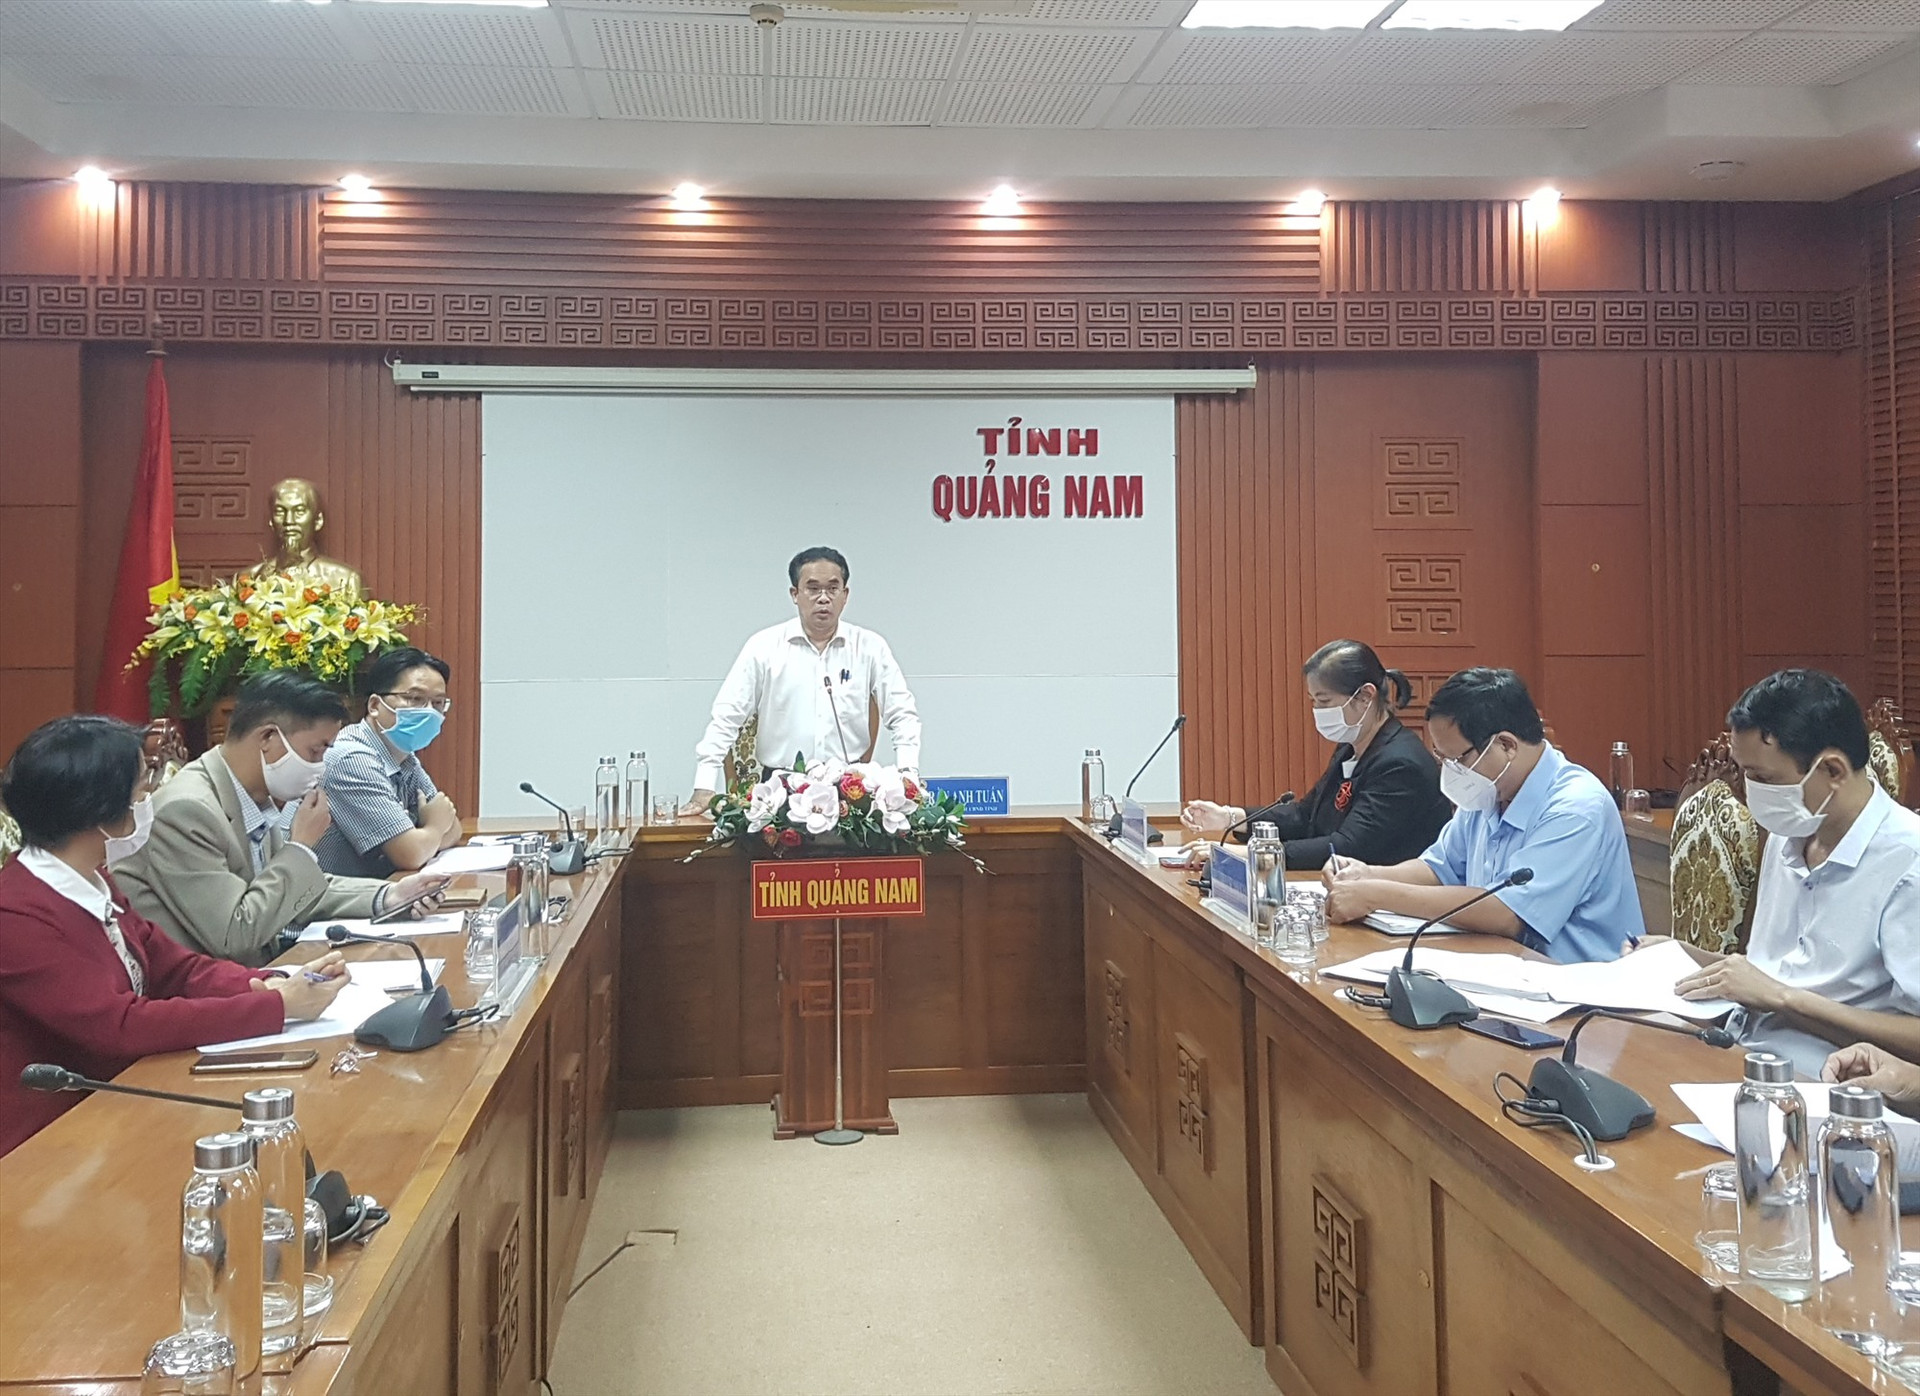 Phó Chủ tịch UBND tỉnh Trần Anh Tuấn chủ trì buổi làm việc về kế hoạch làm việc với doanh nghiệp chiều 30.11. Ảnh: D.L